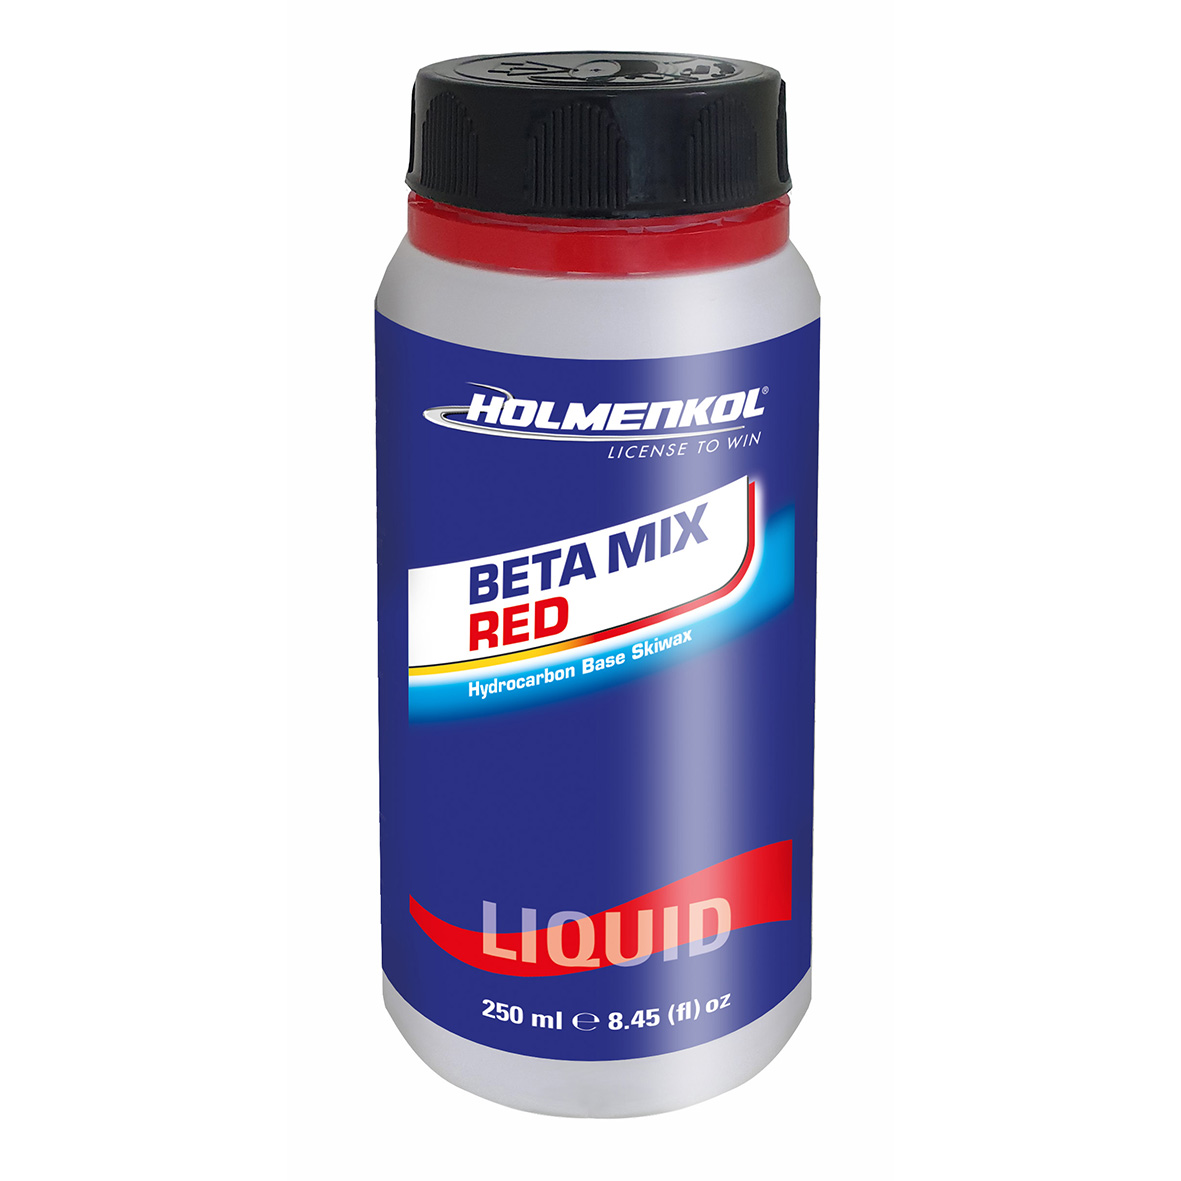 Beta Mix Red Liquid